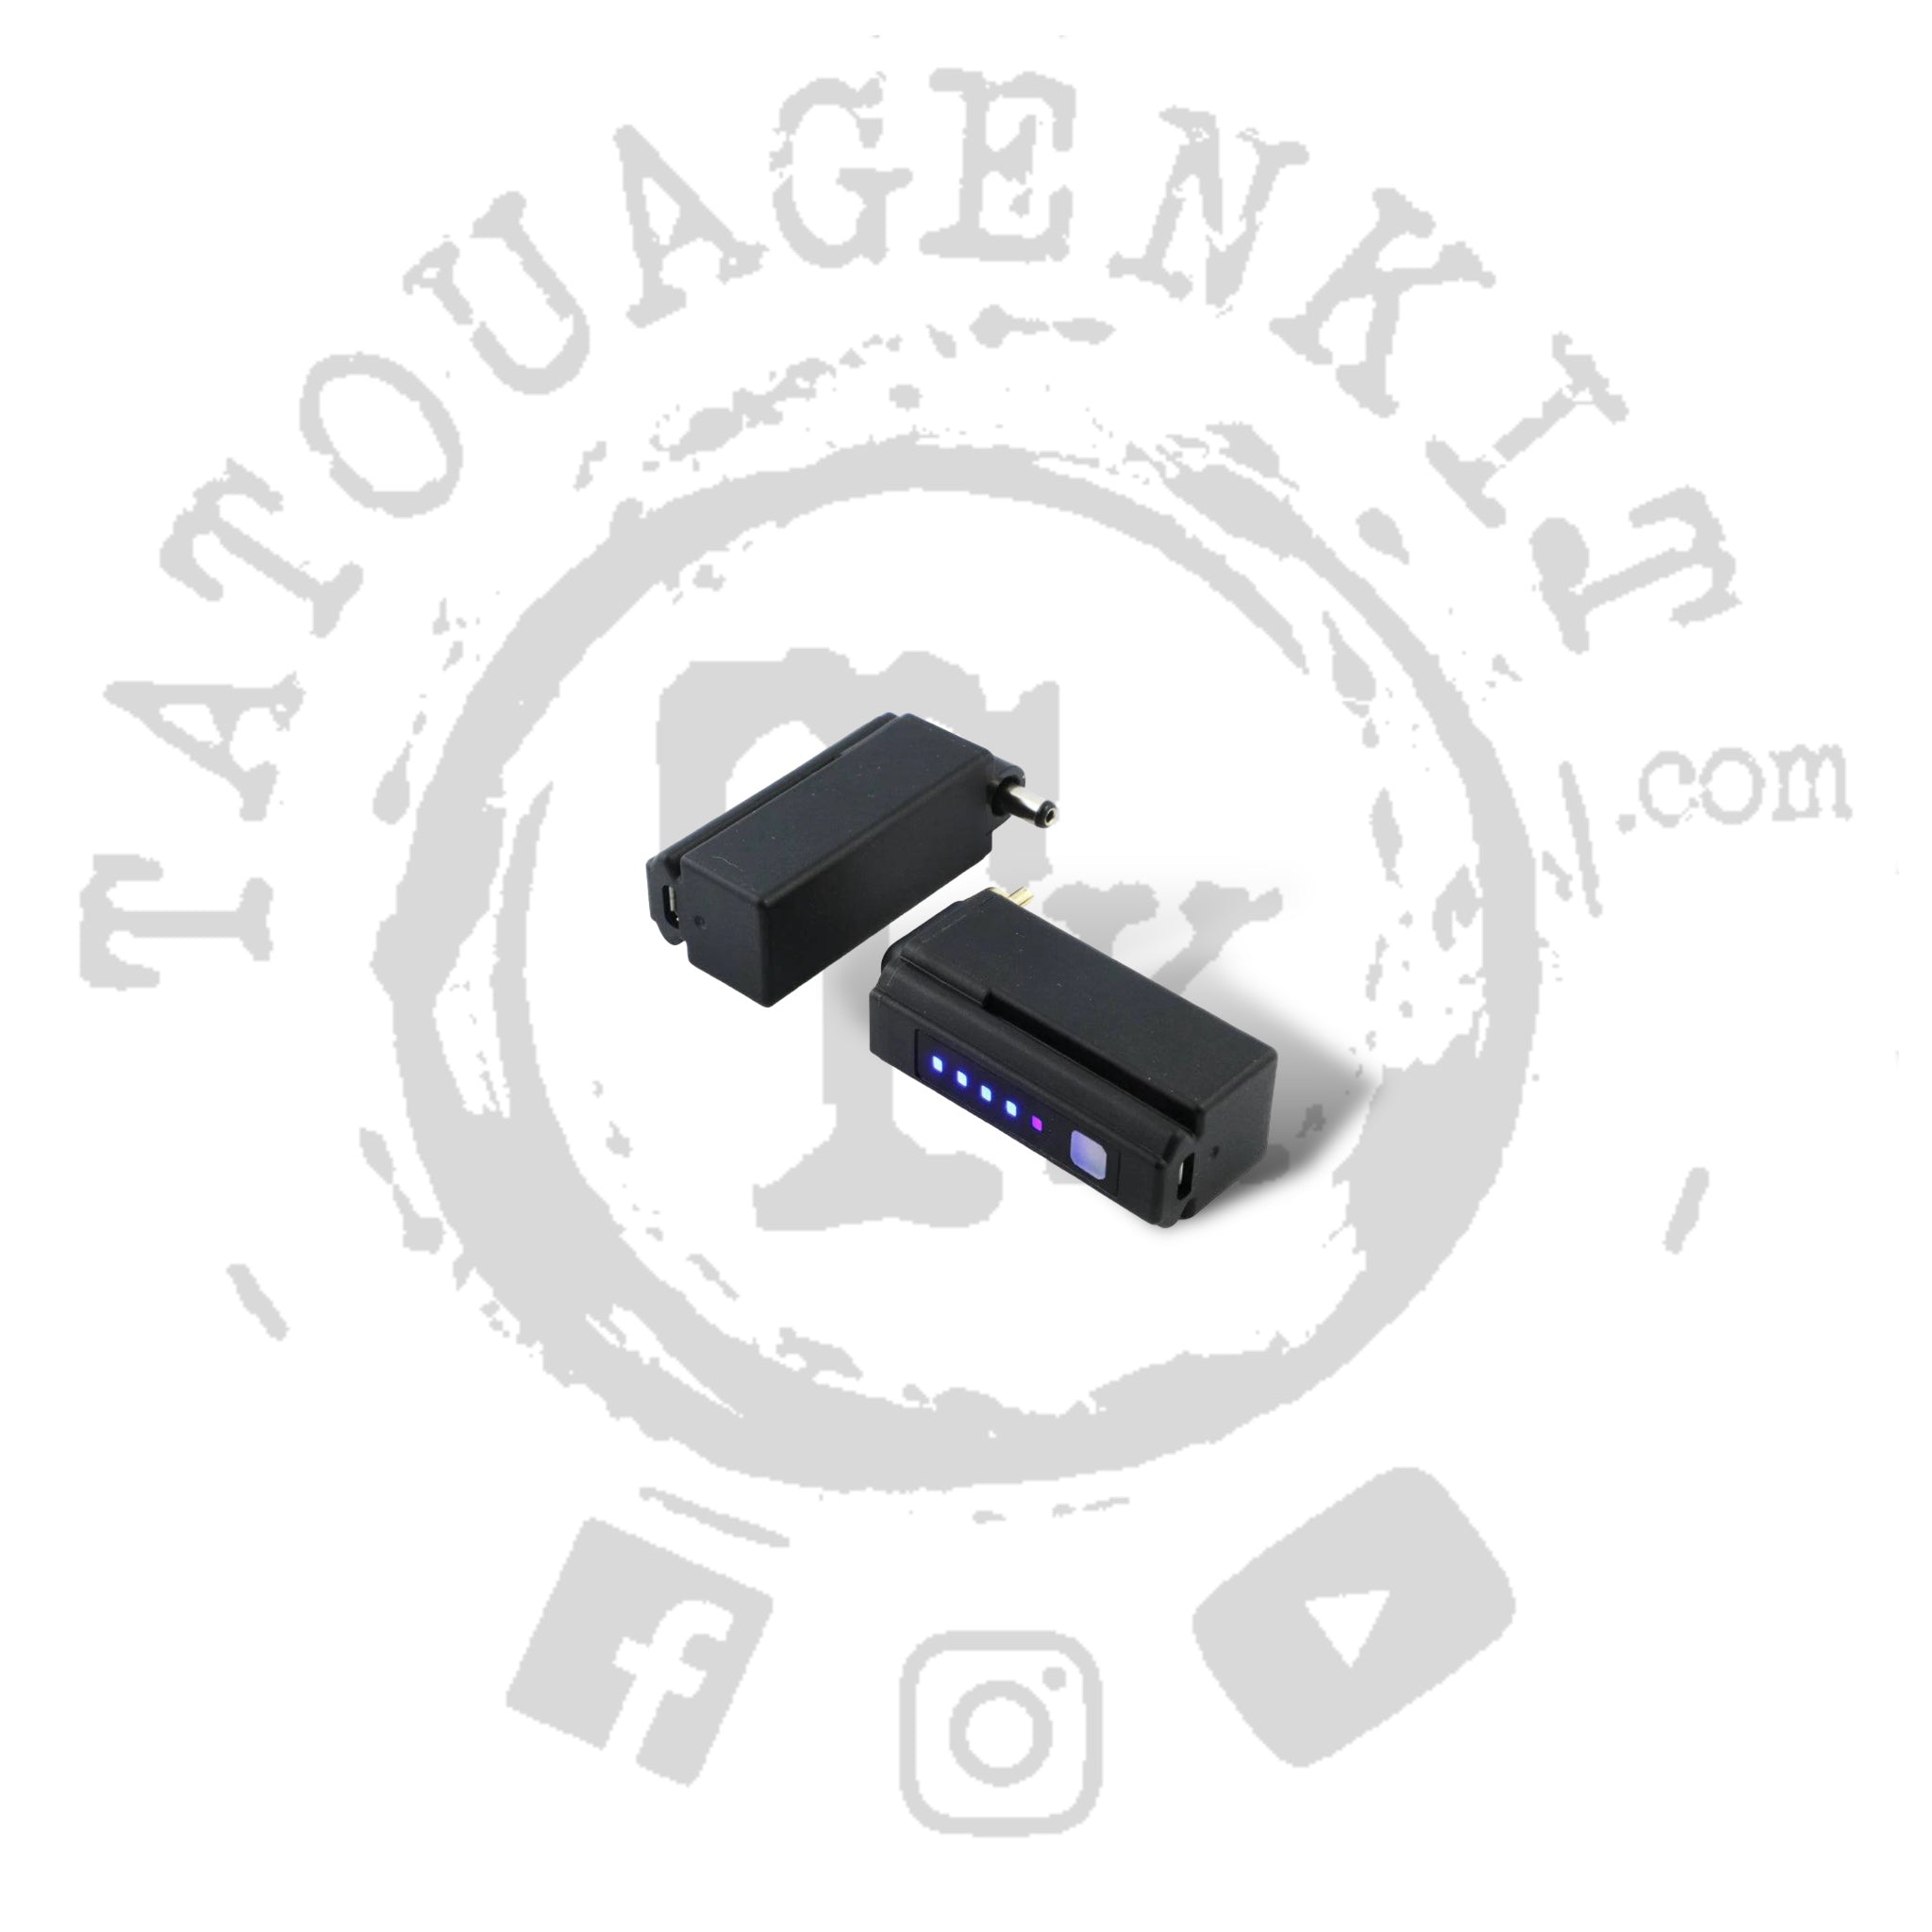 Batterie sans fil machine a tatouer RCA